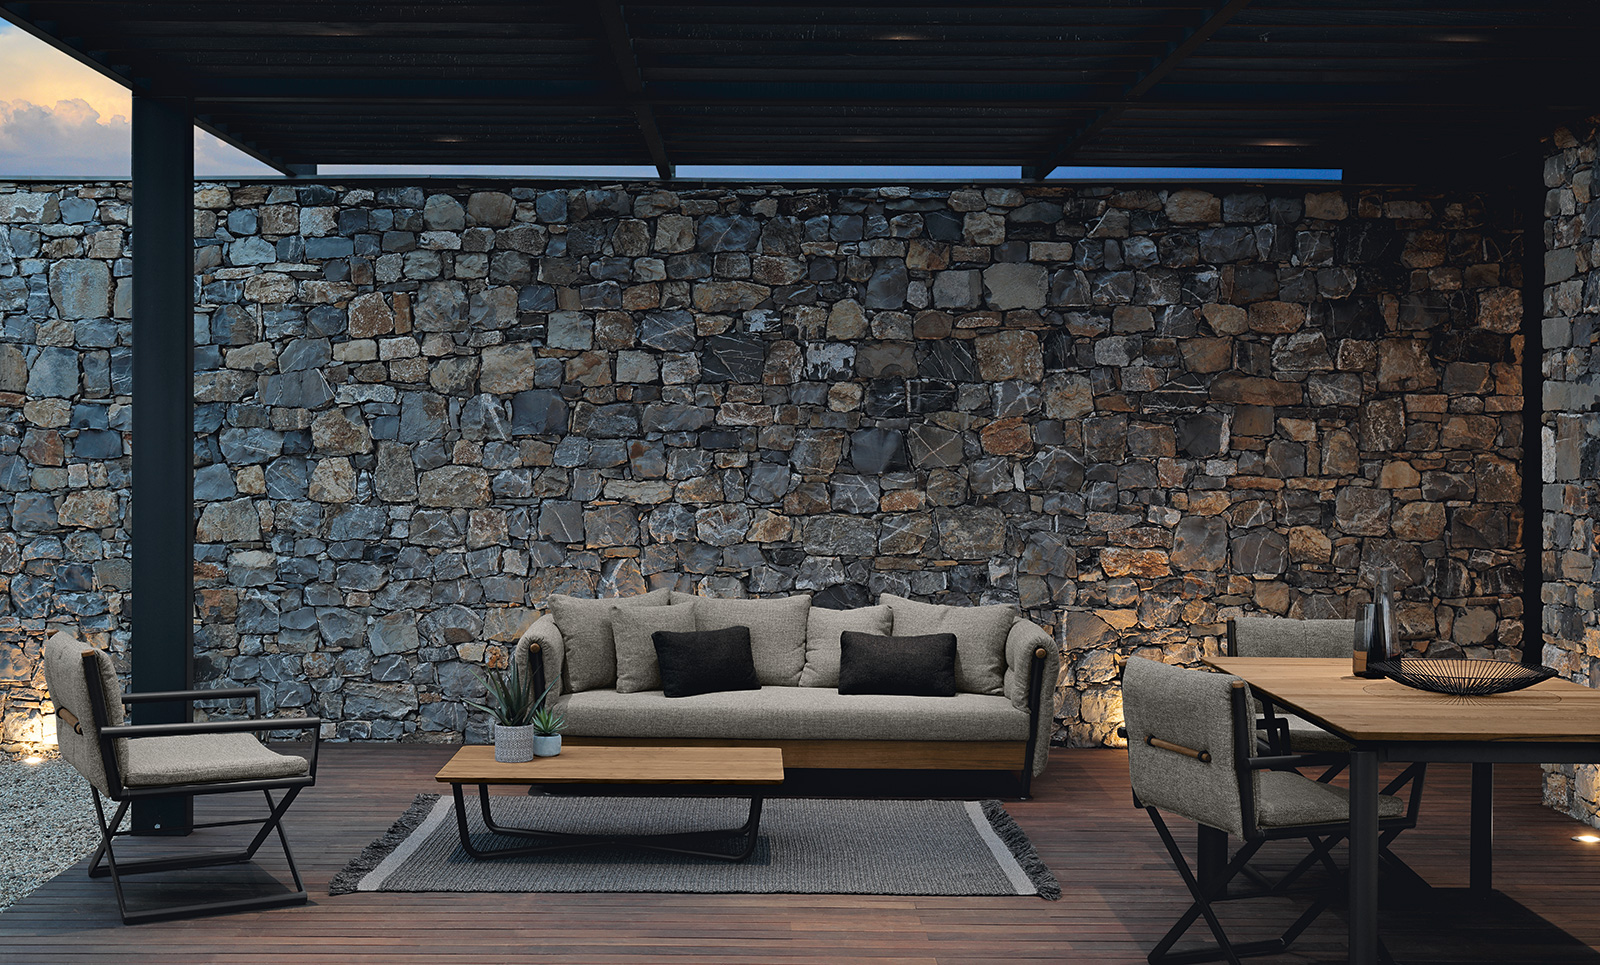 Table basse d'extérieur en teak et alulinium. Vente en ligne de meubles de jardin design haut de gamme made in italy.